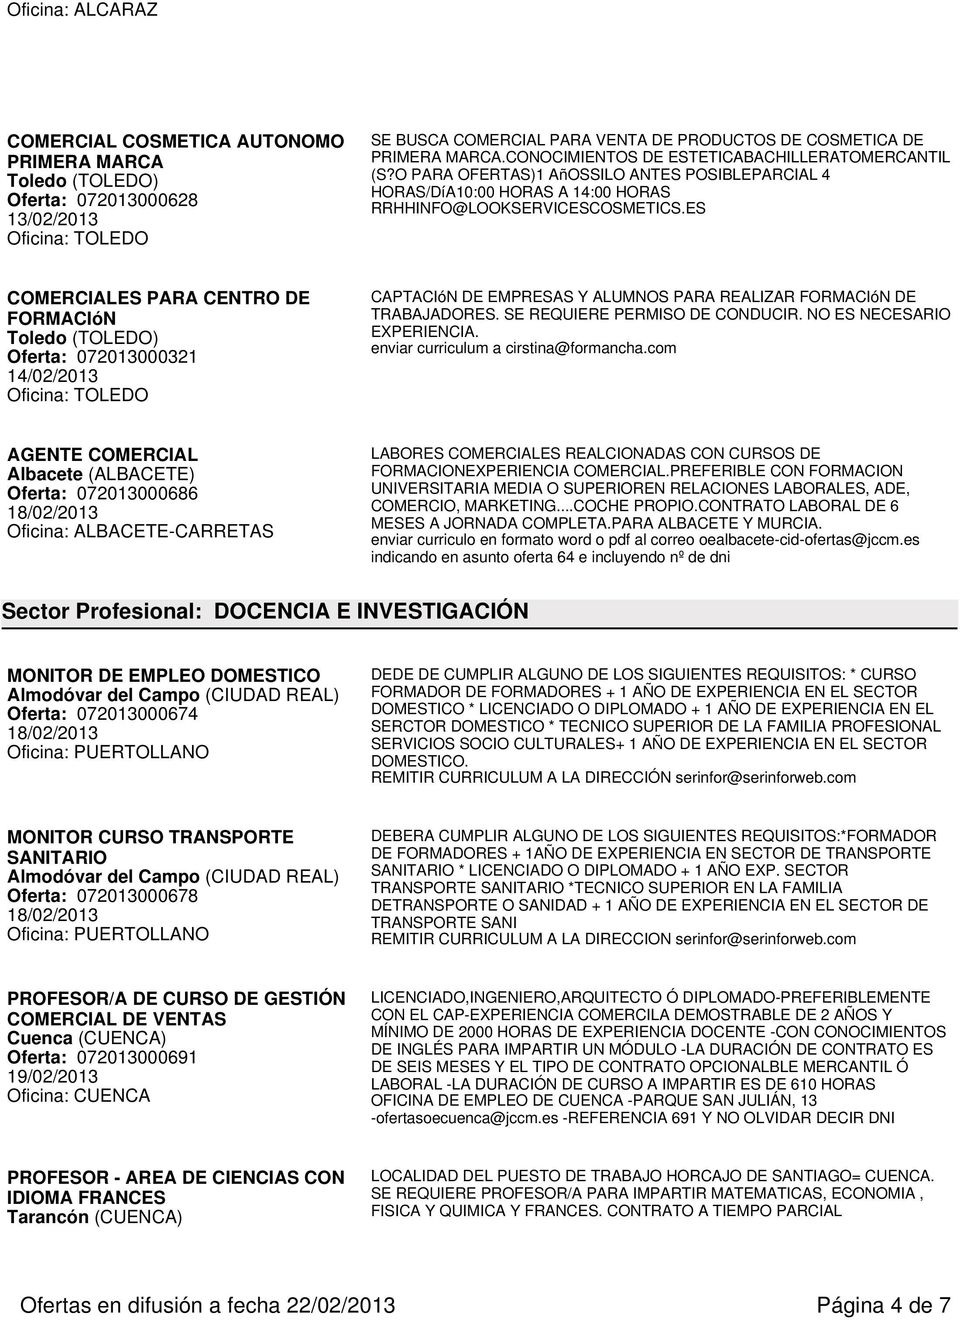 ES COMERCIALES PARA CENTRO DE FORMACIóN Toledo (TOLEDO) Oferta: 072013000321 14/02/2013 Oficina: TOLEDO CAPTACIóN DE EMPRESAS Y ALUMNOS PARA REALIZAR FORMACIóN DE TRABAJADORES.